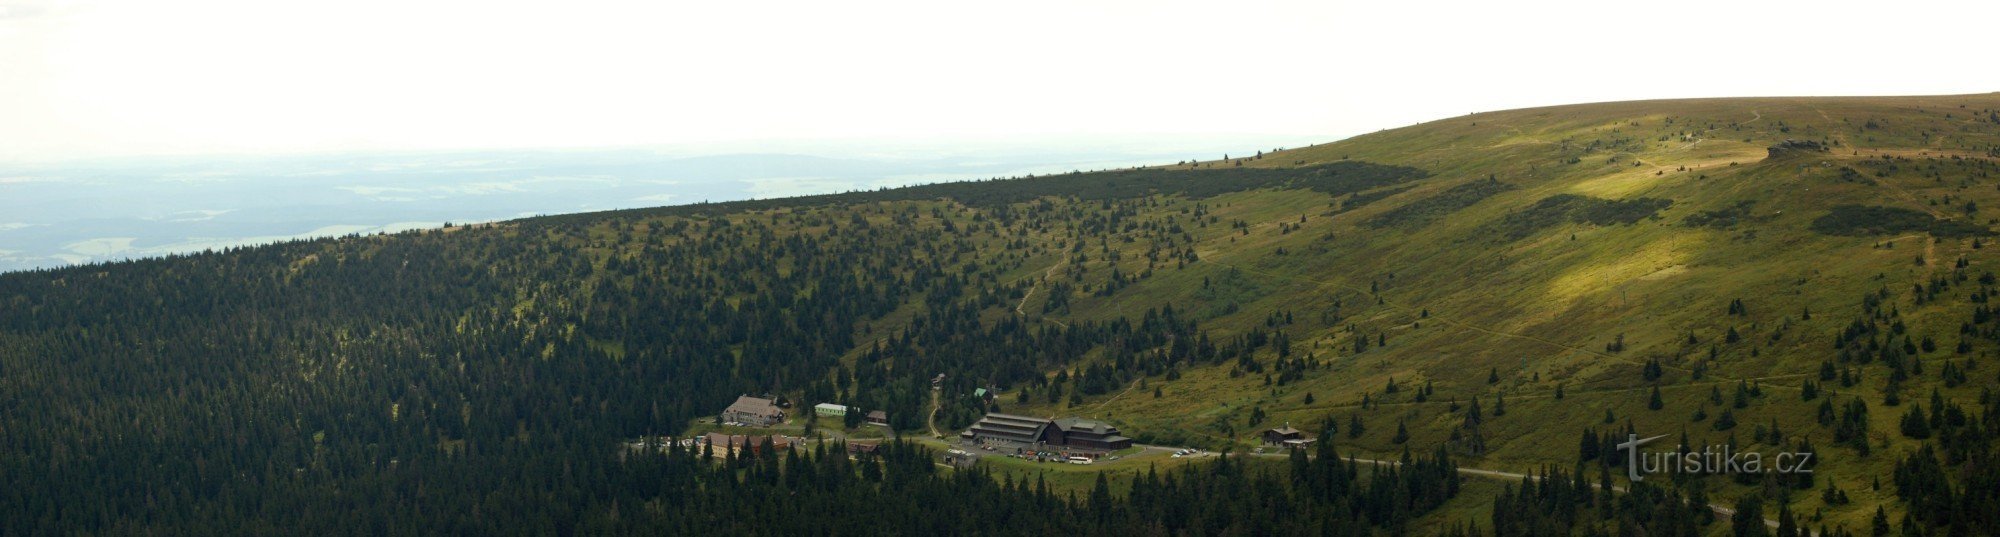 Panorama Ovčárny